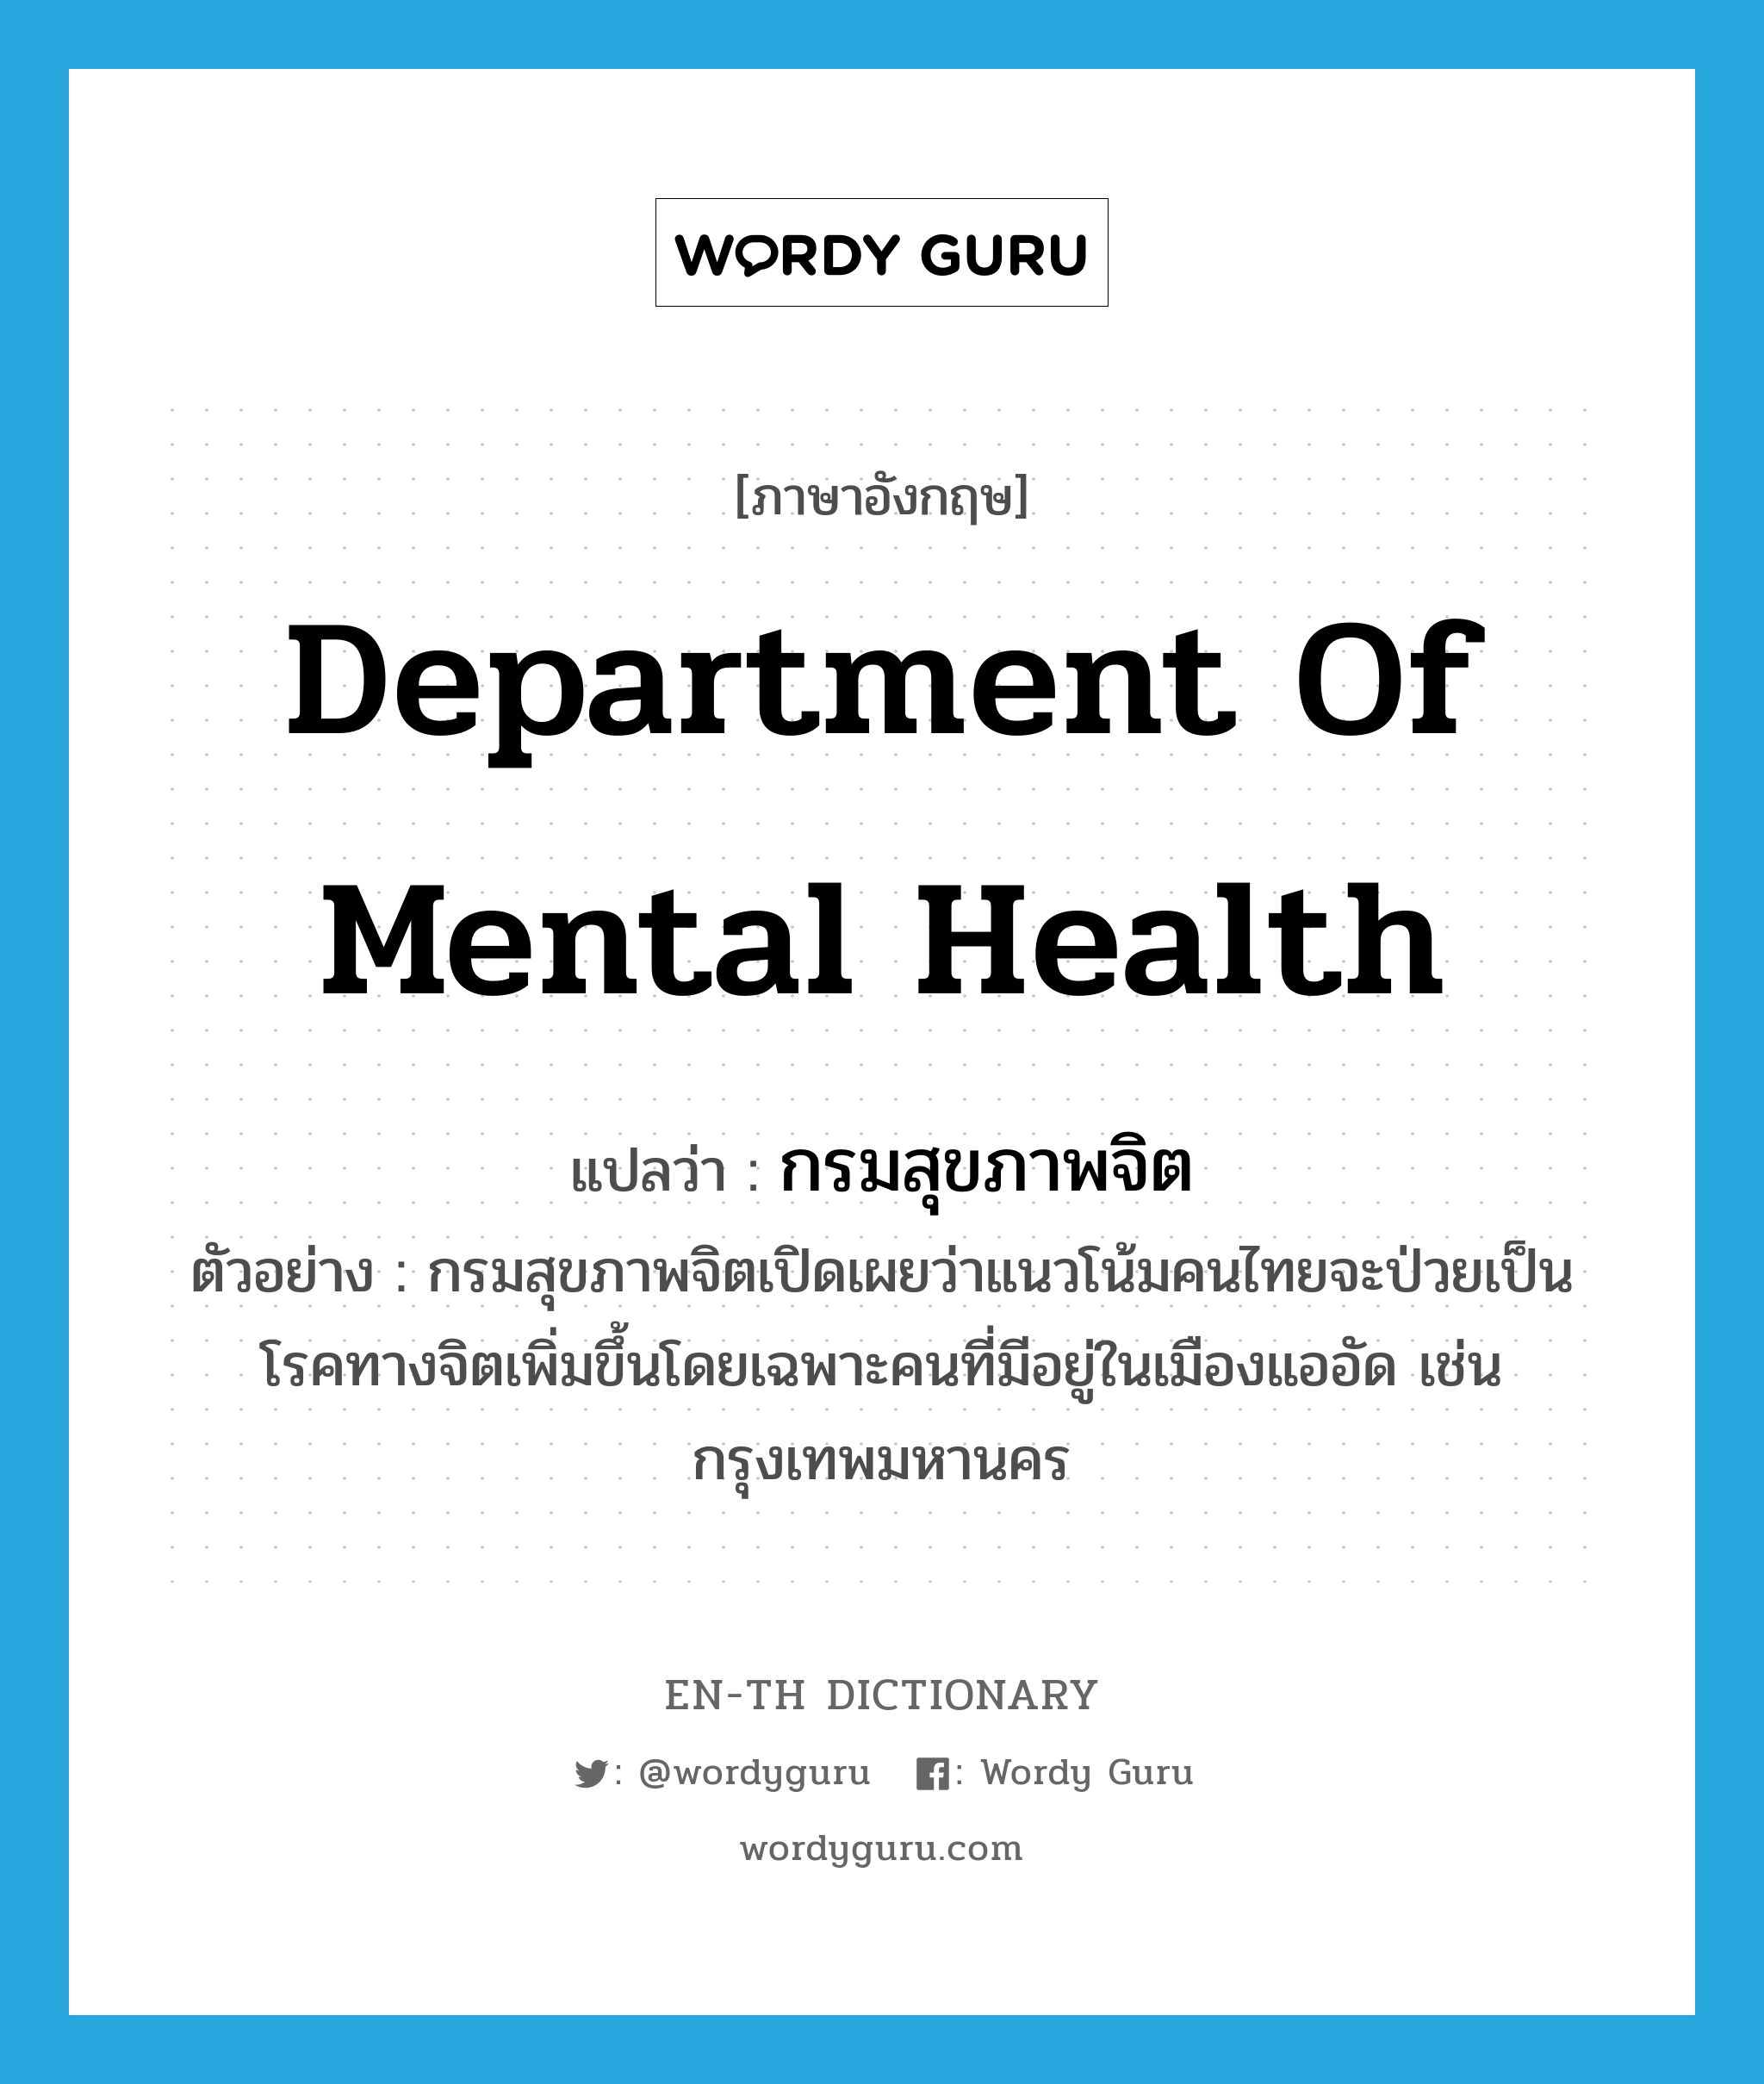 กรมสุขภาพจิต ภาษาอังกฤษ?, คำศัพท์ภาษาอังกฤษ กรมสุขภาพจิต แปลว่า Department of Mental Health ประเภท N ตัวอย่าง กรมสุขภาพจิตเปิดเผยว่าแนวโน้มคนไทยจะป่วยเป็นโรคทางจิตเพิ่มขึ้นโดยเฉพาะคนที่มีอยู่ในเมืองแออัด เช่น กรุงเทพมหานคร หมวด N